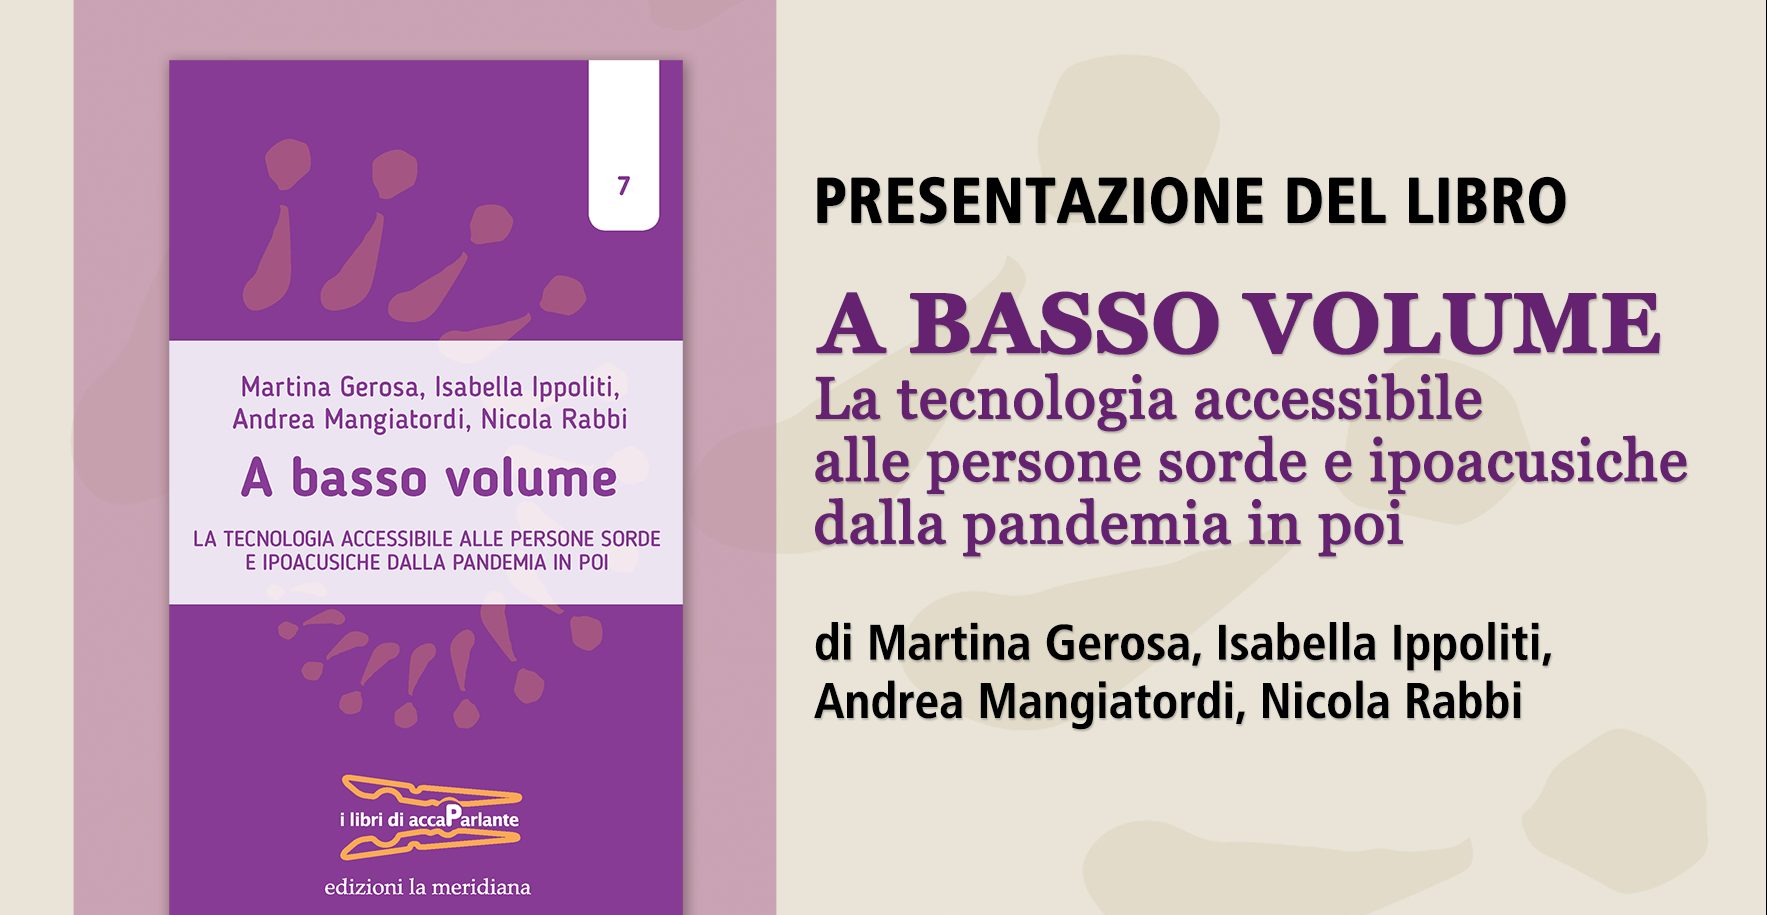 Alla Fondazione Gualandi presentazione del libro “A basso volume”